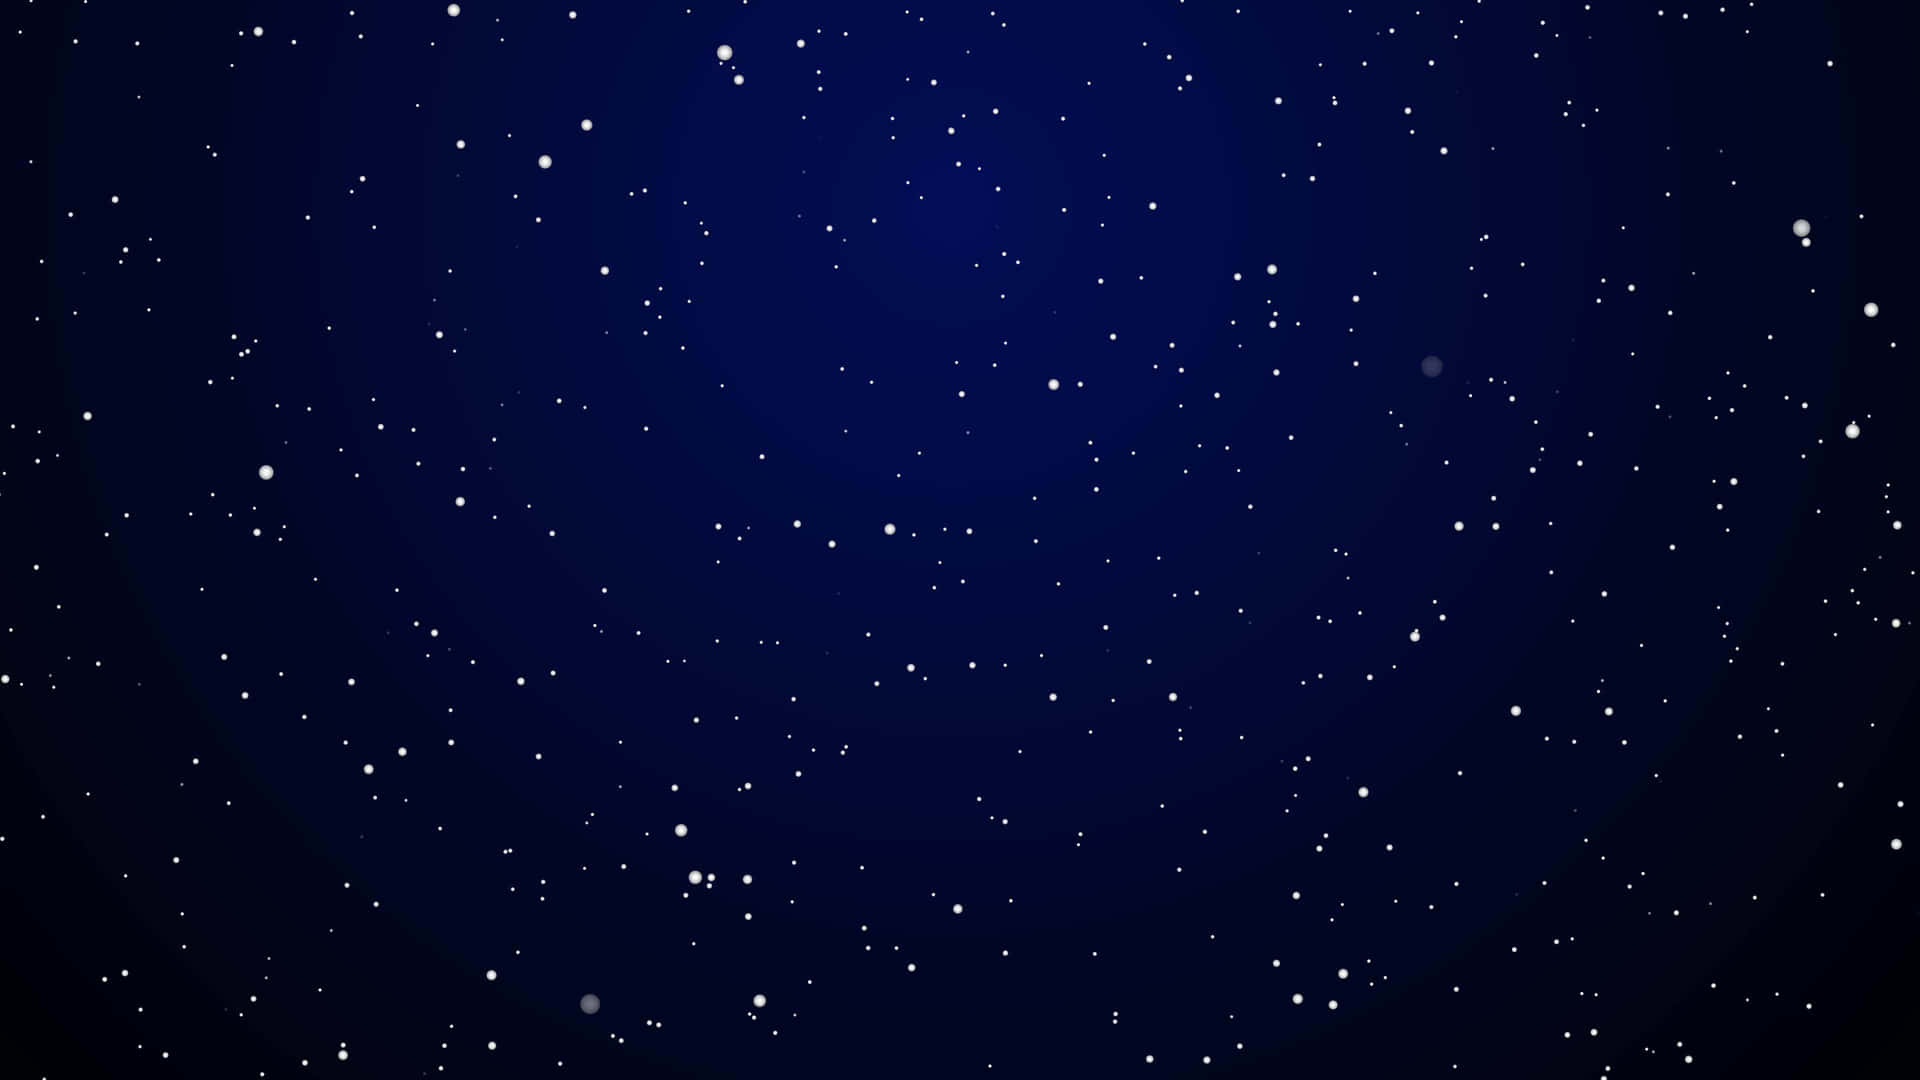 A blue star in a night sky